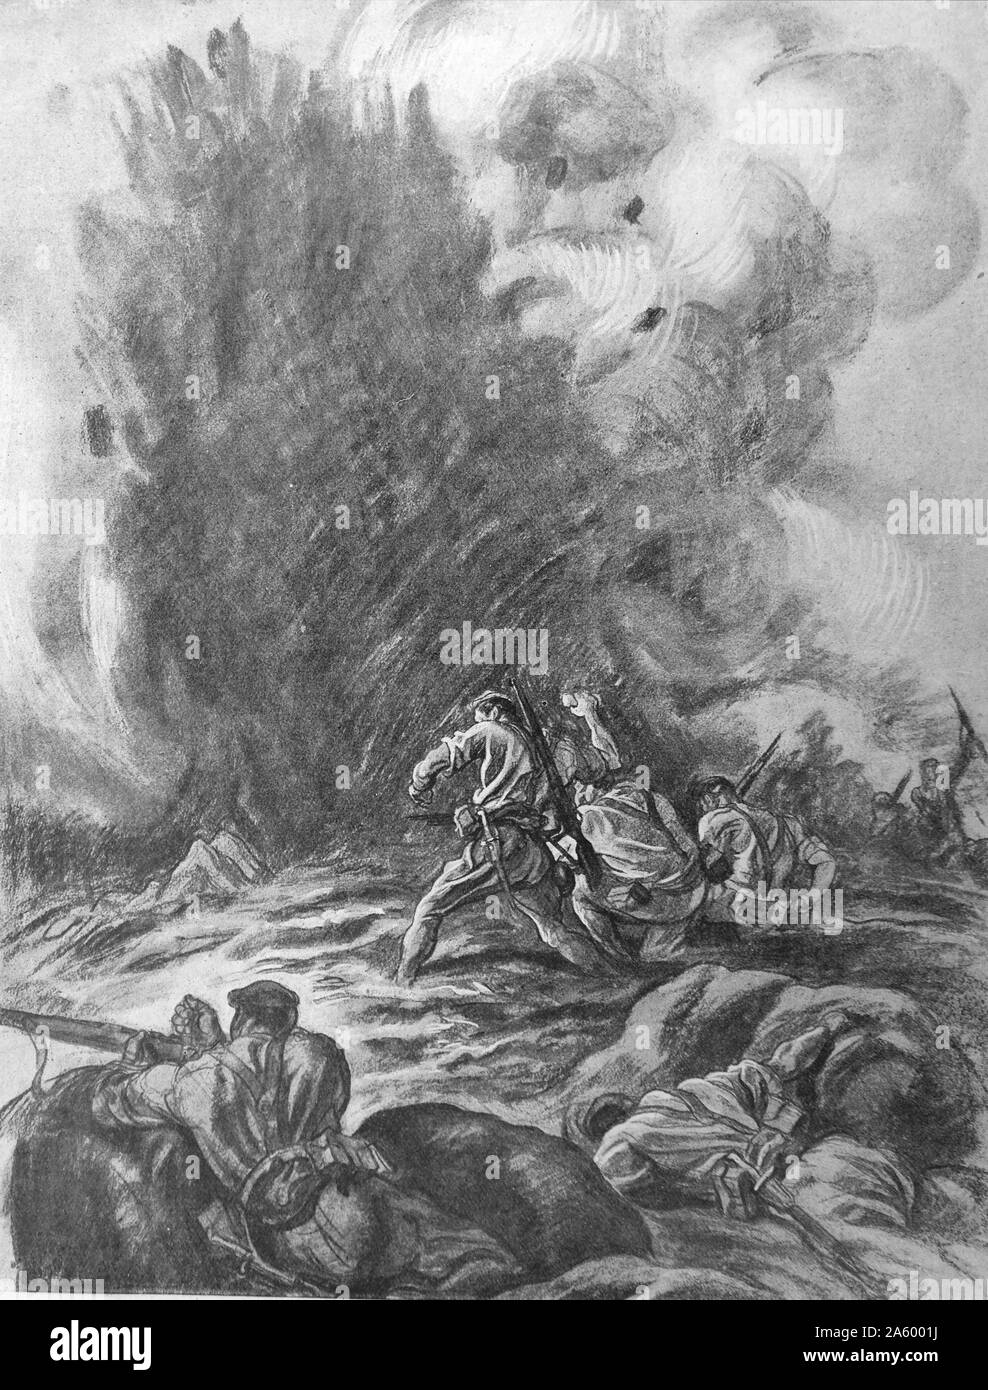 Propaganda-Illustration von Carlos Saenz De Tejada Darstellung nationalistische Soldaten in einem erbitterten Kampf während des spanischen Bürgerkriegs. Datierte 1937 Stockfoto